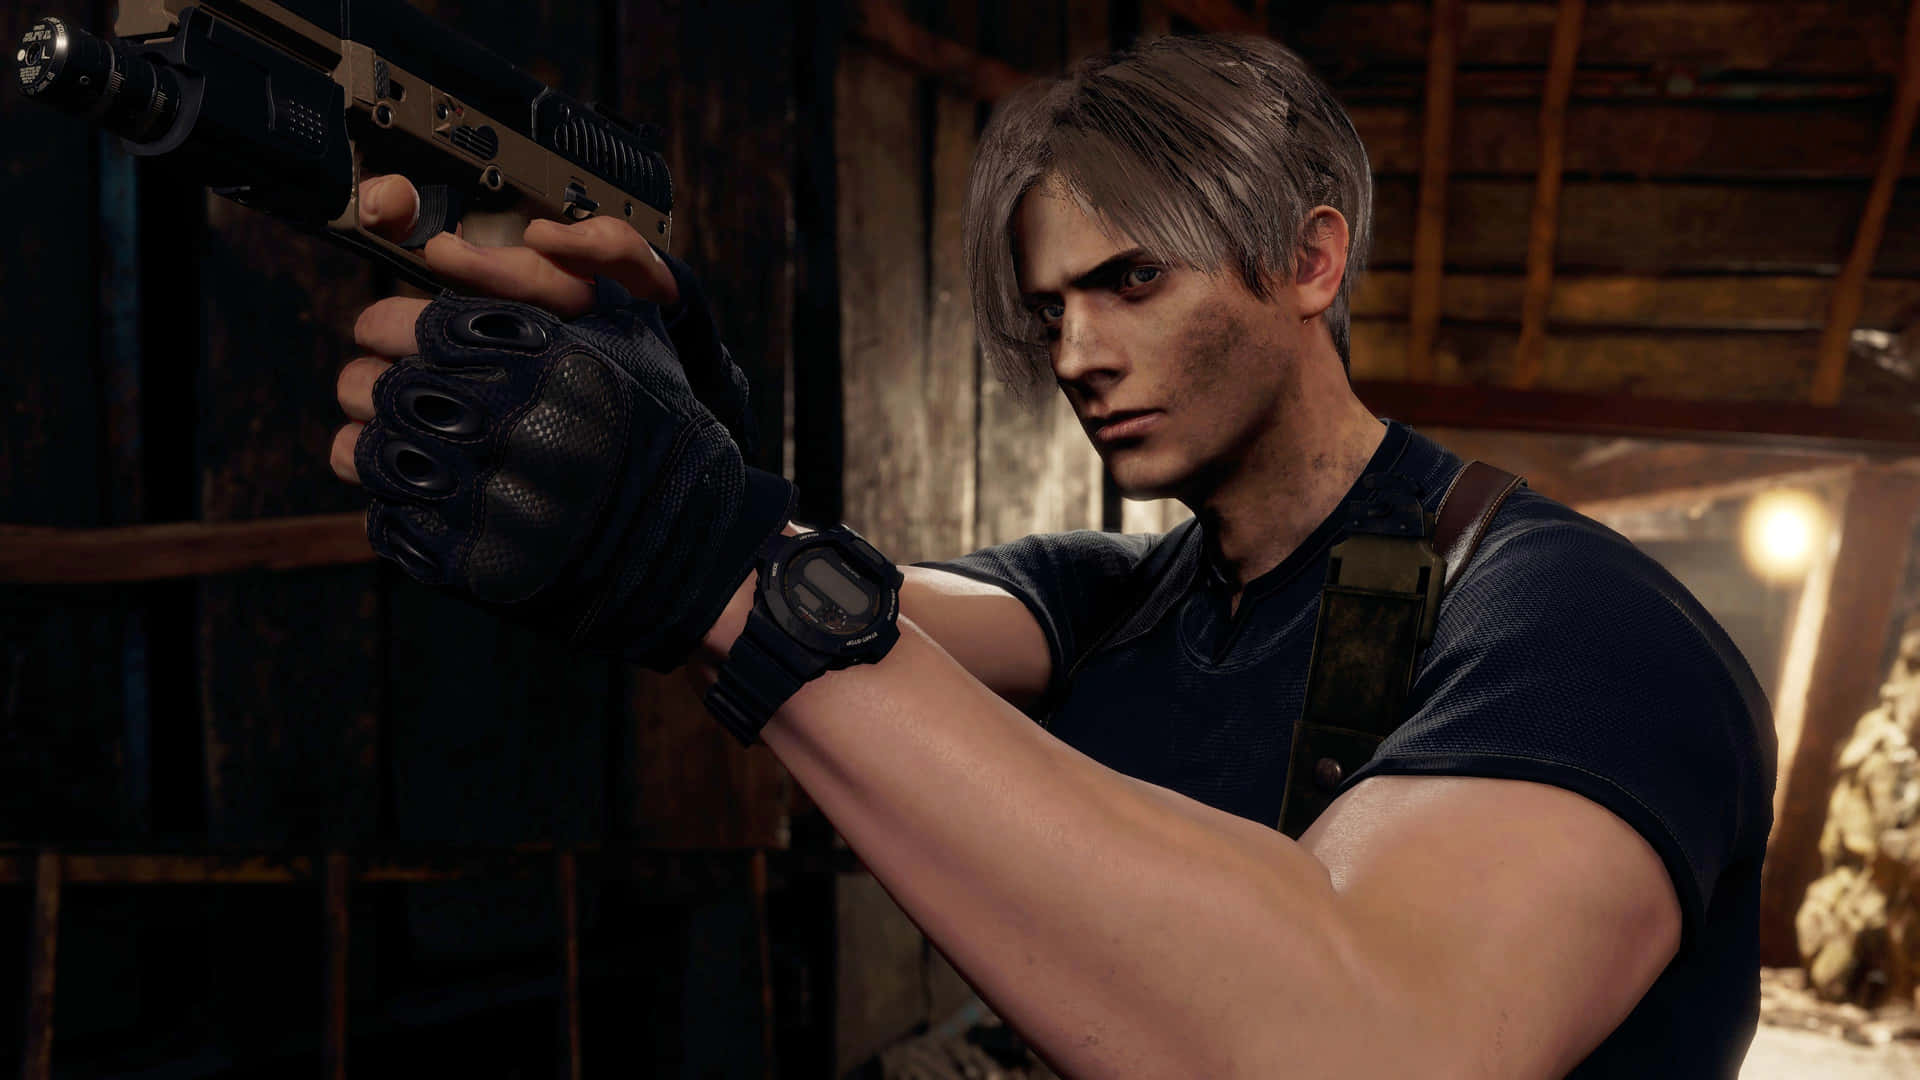 Leon Kennedy Aiming Pistol Resident Evil4 Remake Wallpaper